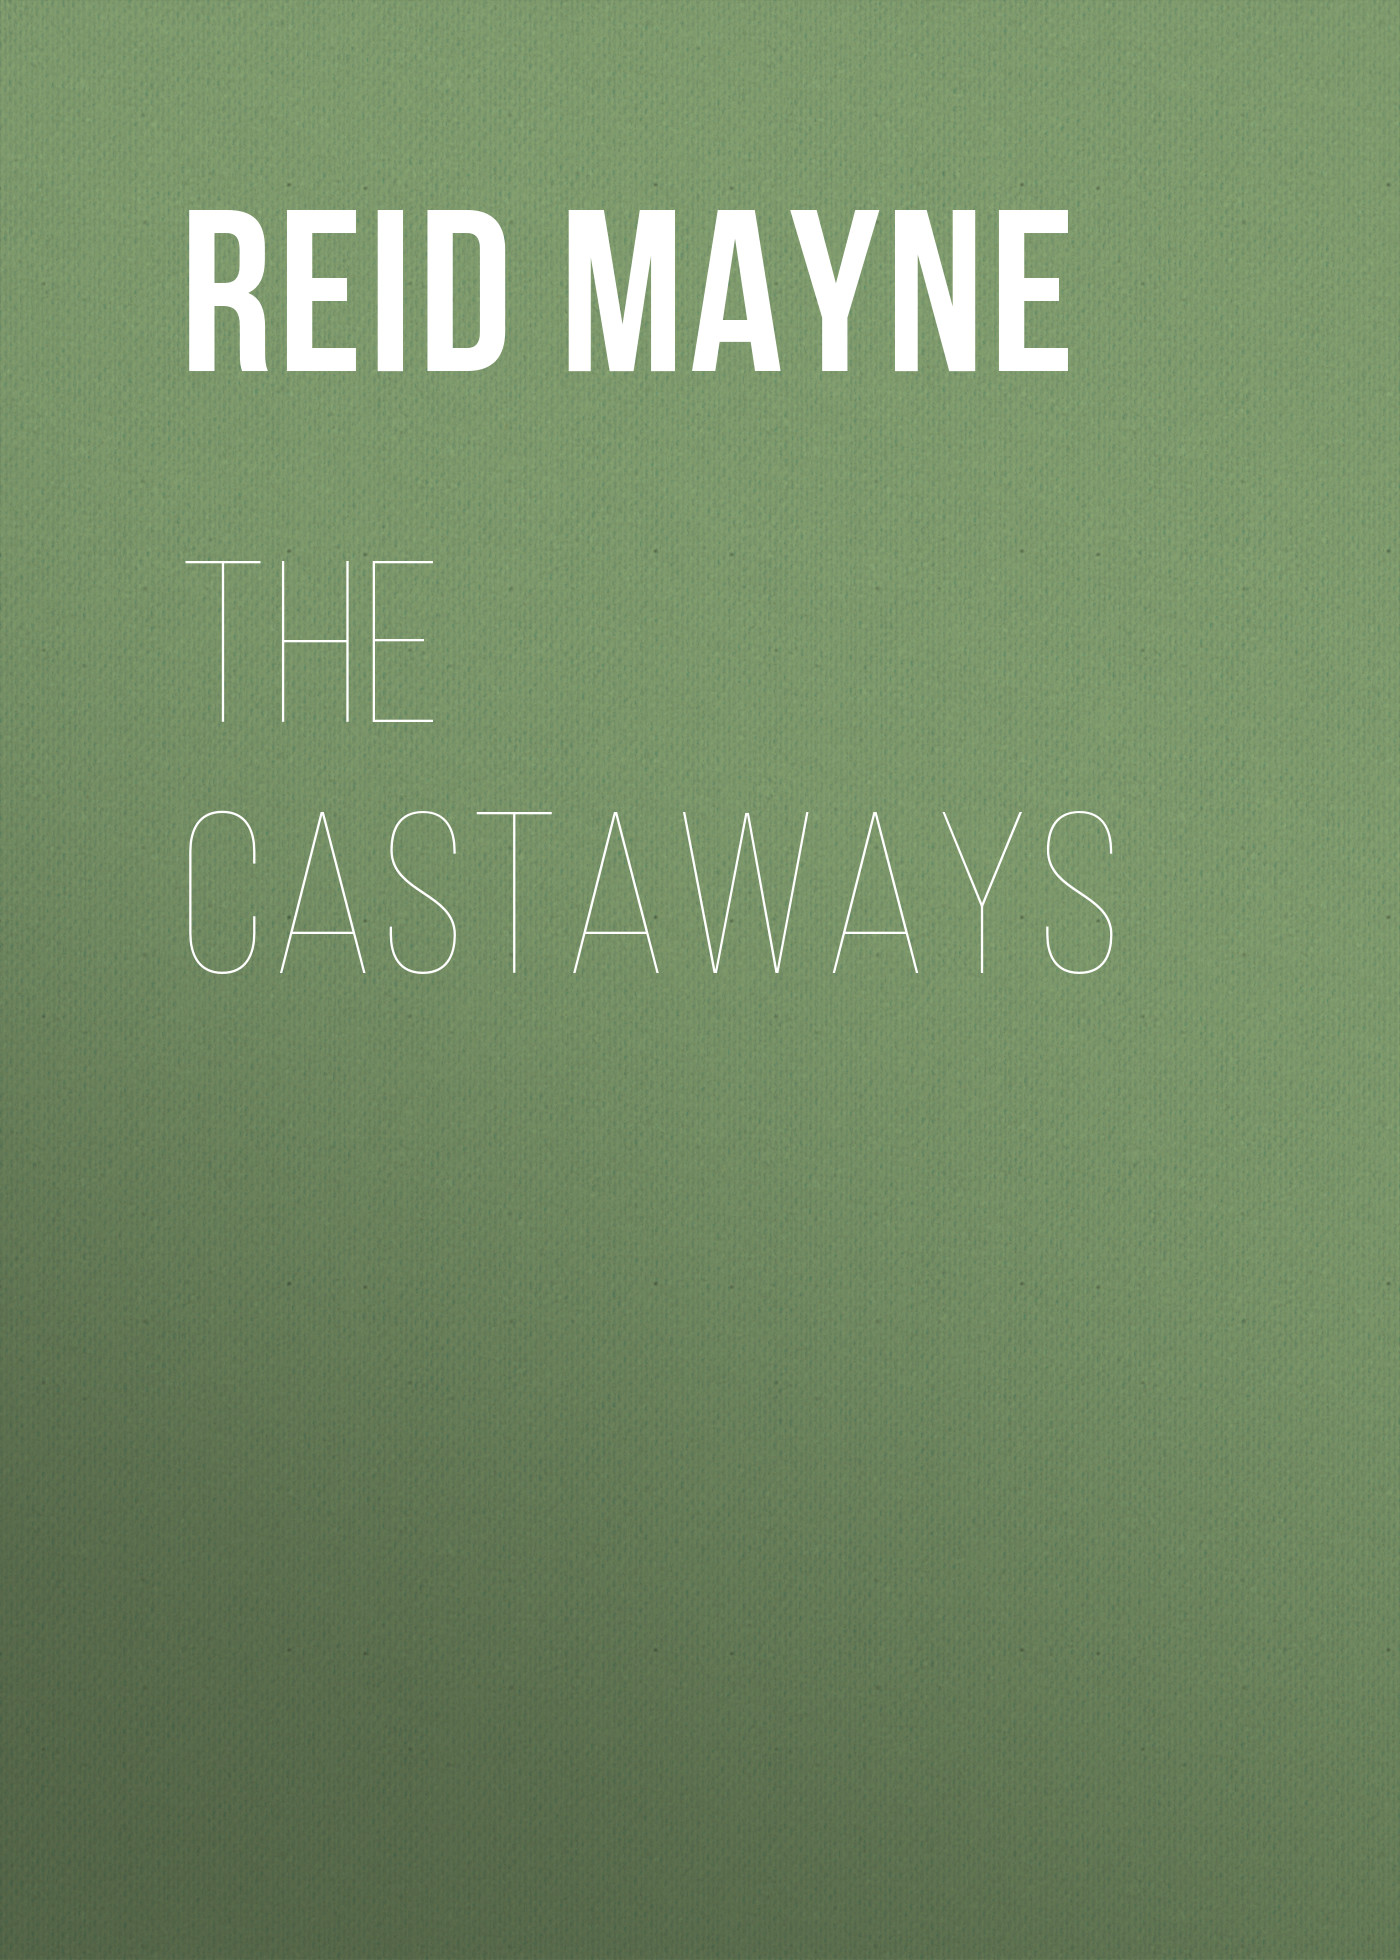 Книга The Castaways из серии , созданная Mayne Reid, может относится к жанру Литература 19 века, Зарубежная старинная литература, Зарубежная классика. Стоимость электронной книги The Castaways с идентификатором 25449812 составляет 0 руб.